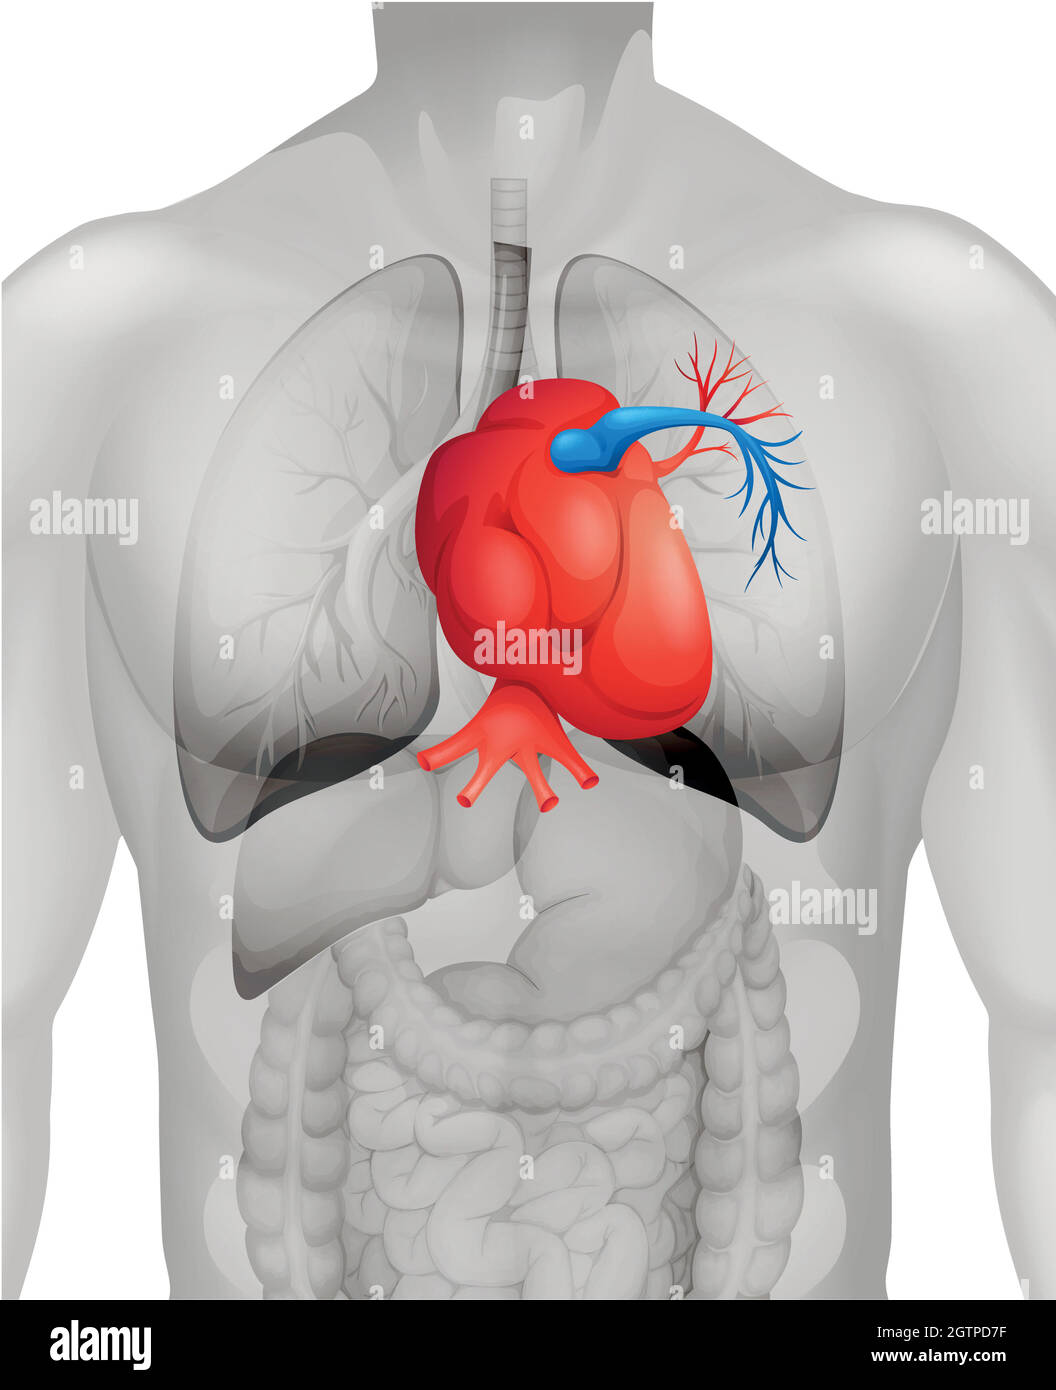 Diagramm des menschlichen Herzens im Detail Stock Vektor